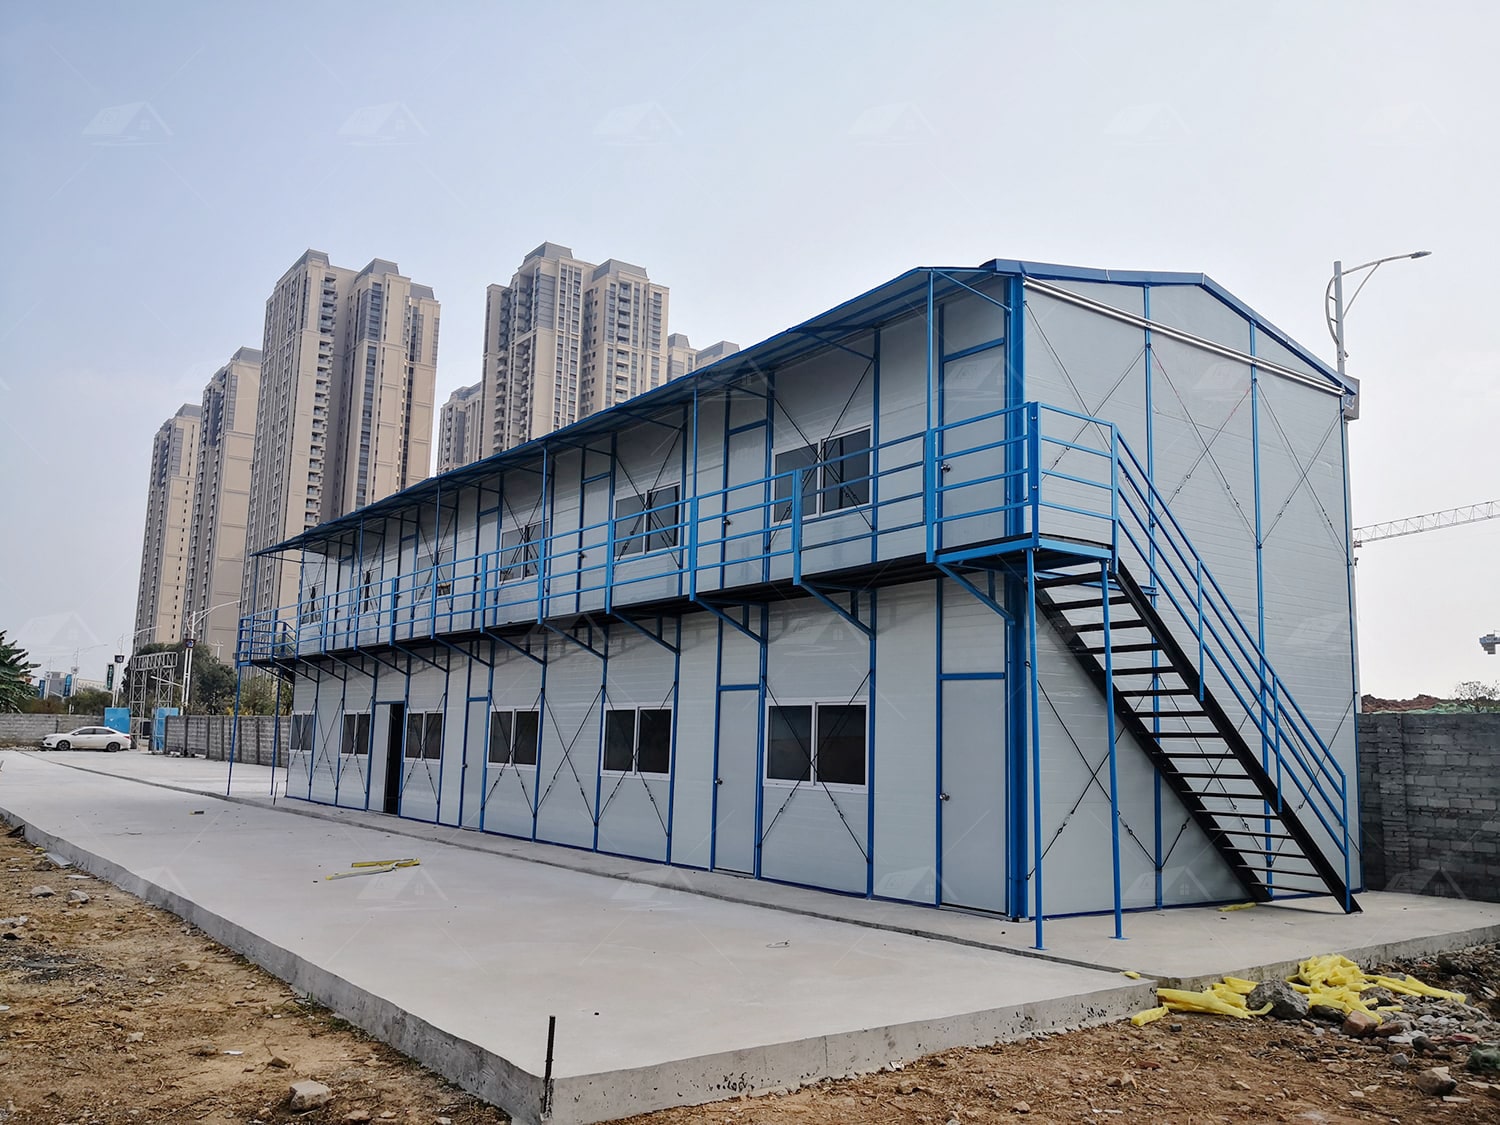 k型活动板房 - 广州市众润房屋科技有限公司